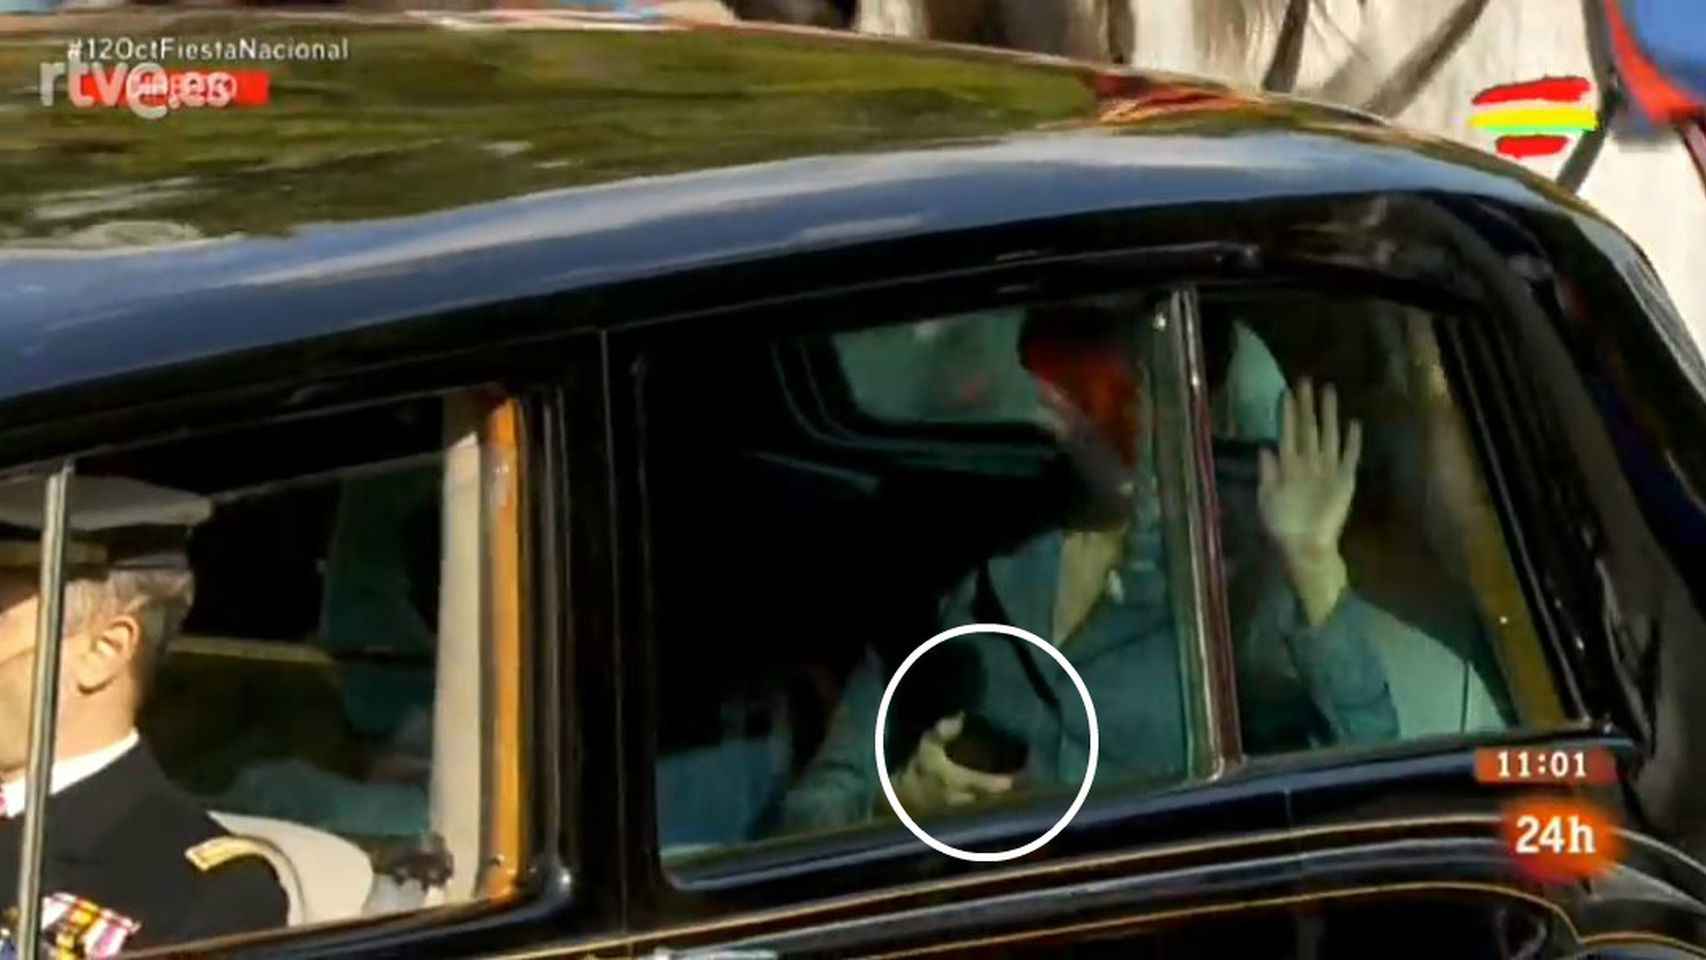 La reina Letizia utilizando su teléfono móvil y saludando con la otra mano.